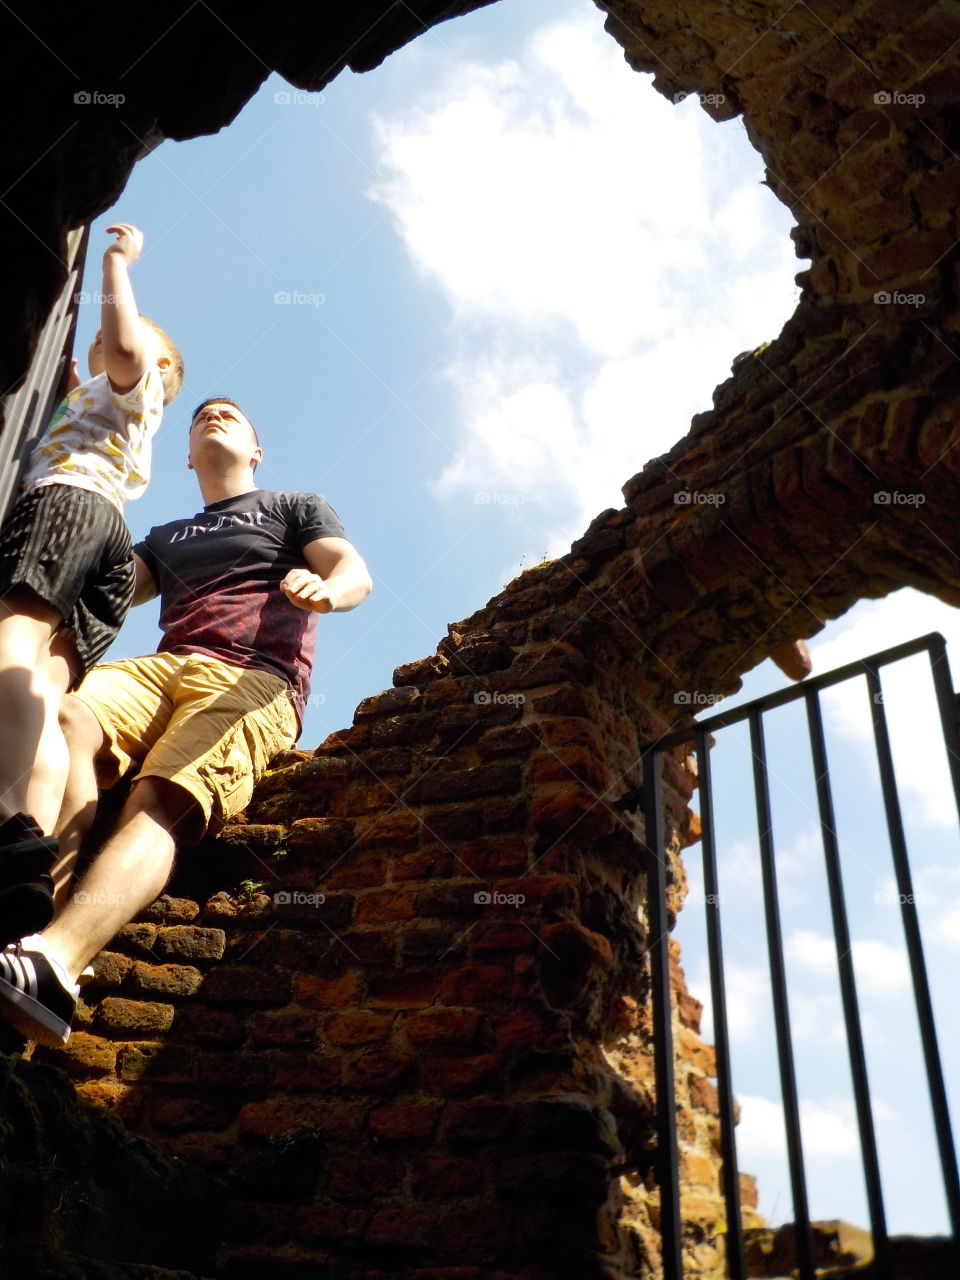 Dazzling heights of Kirby Muxloe castle 🇬🇧